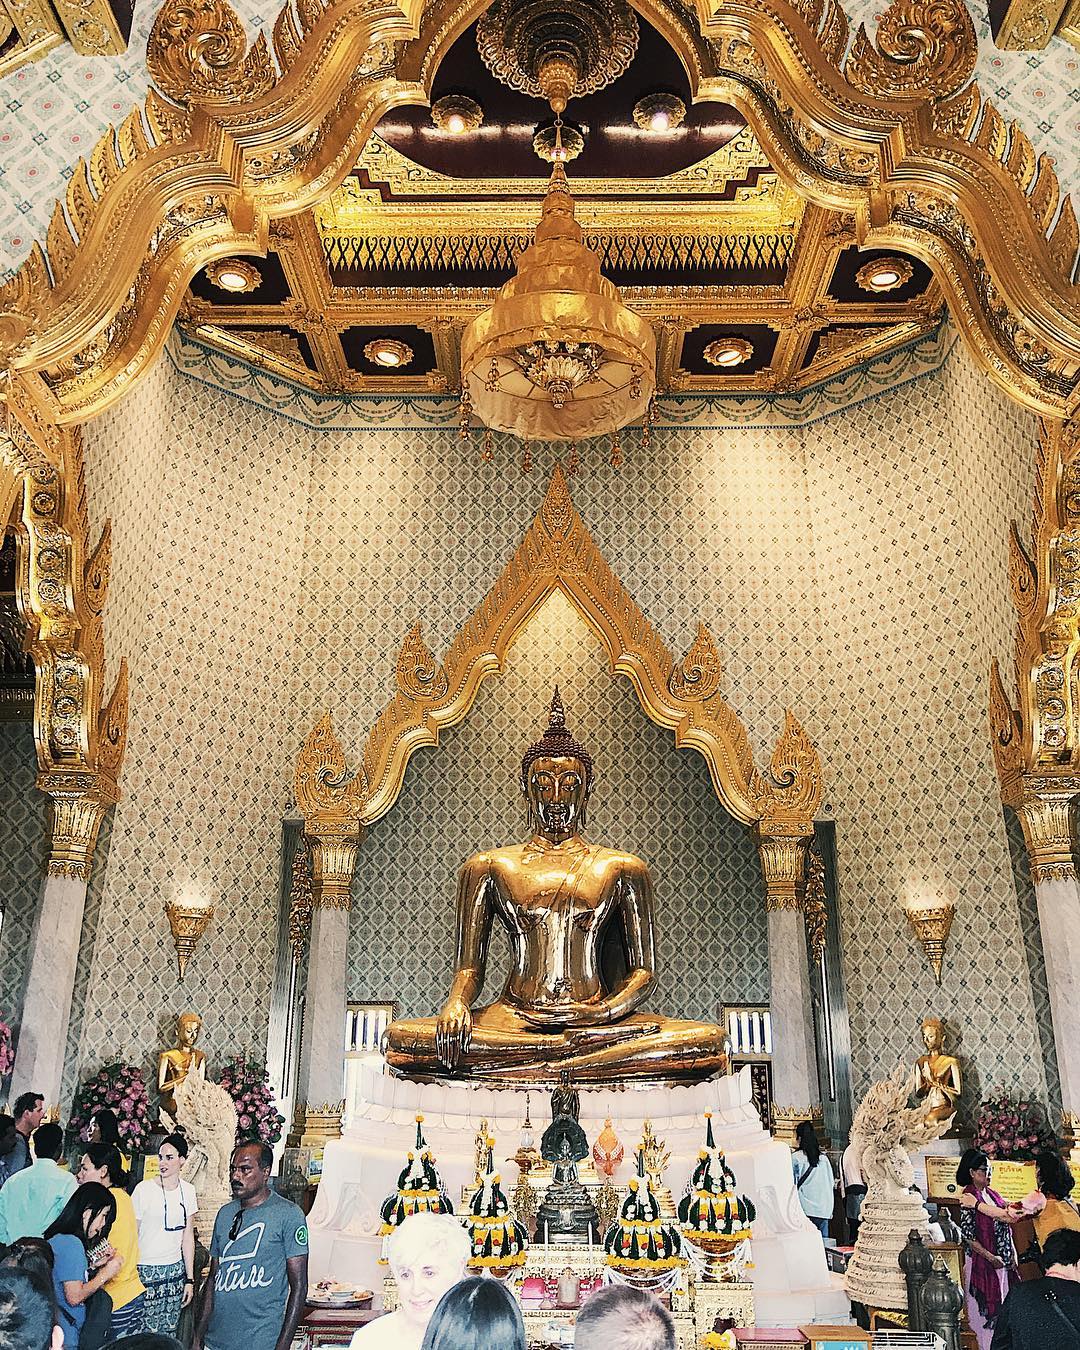 Tượng Phật Vàng tượng trưng cho sự thuần khiết, sức mạnh và quyền năng